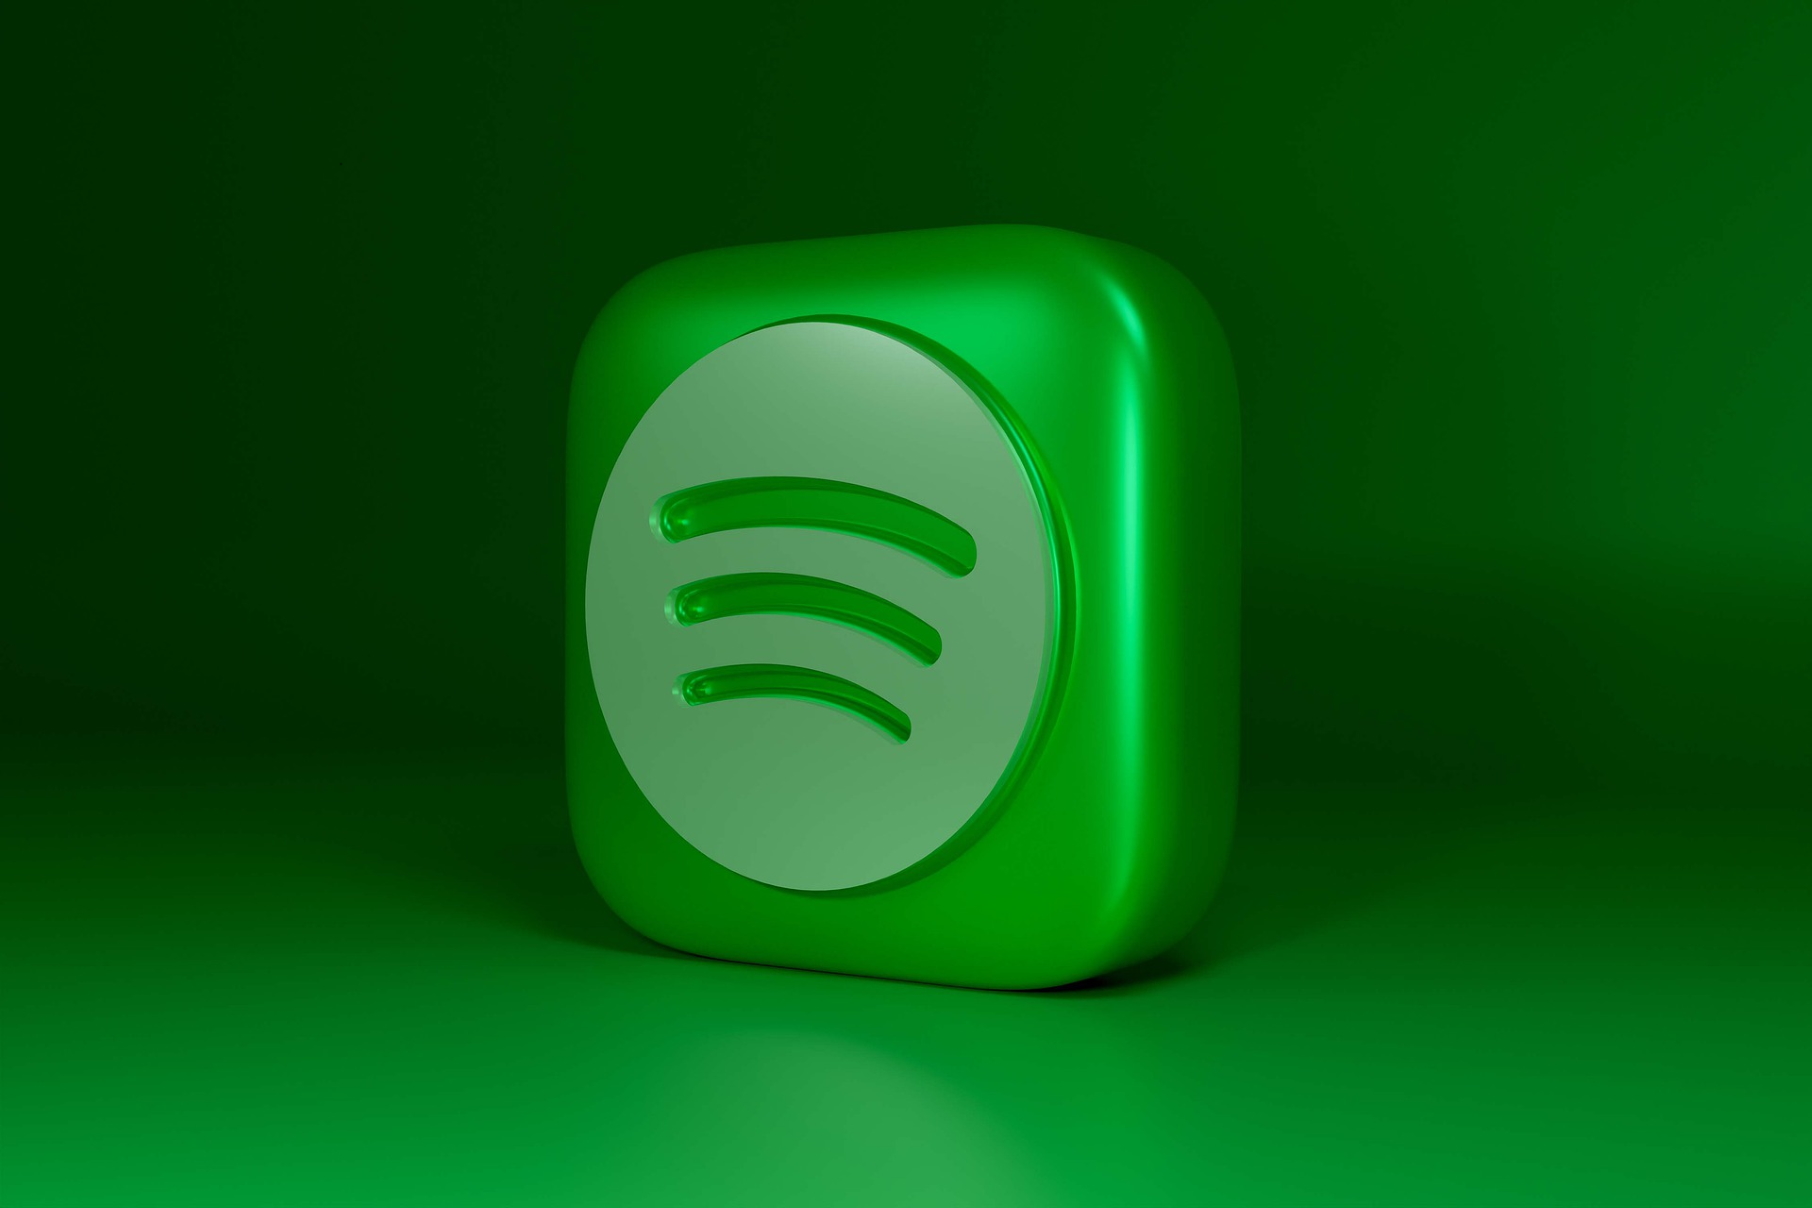 Comment écouter Spotify gratuitement sans publicité sur Windows